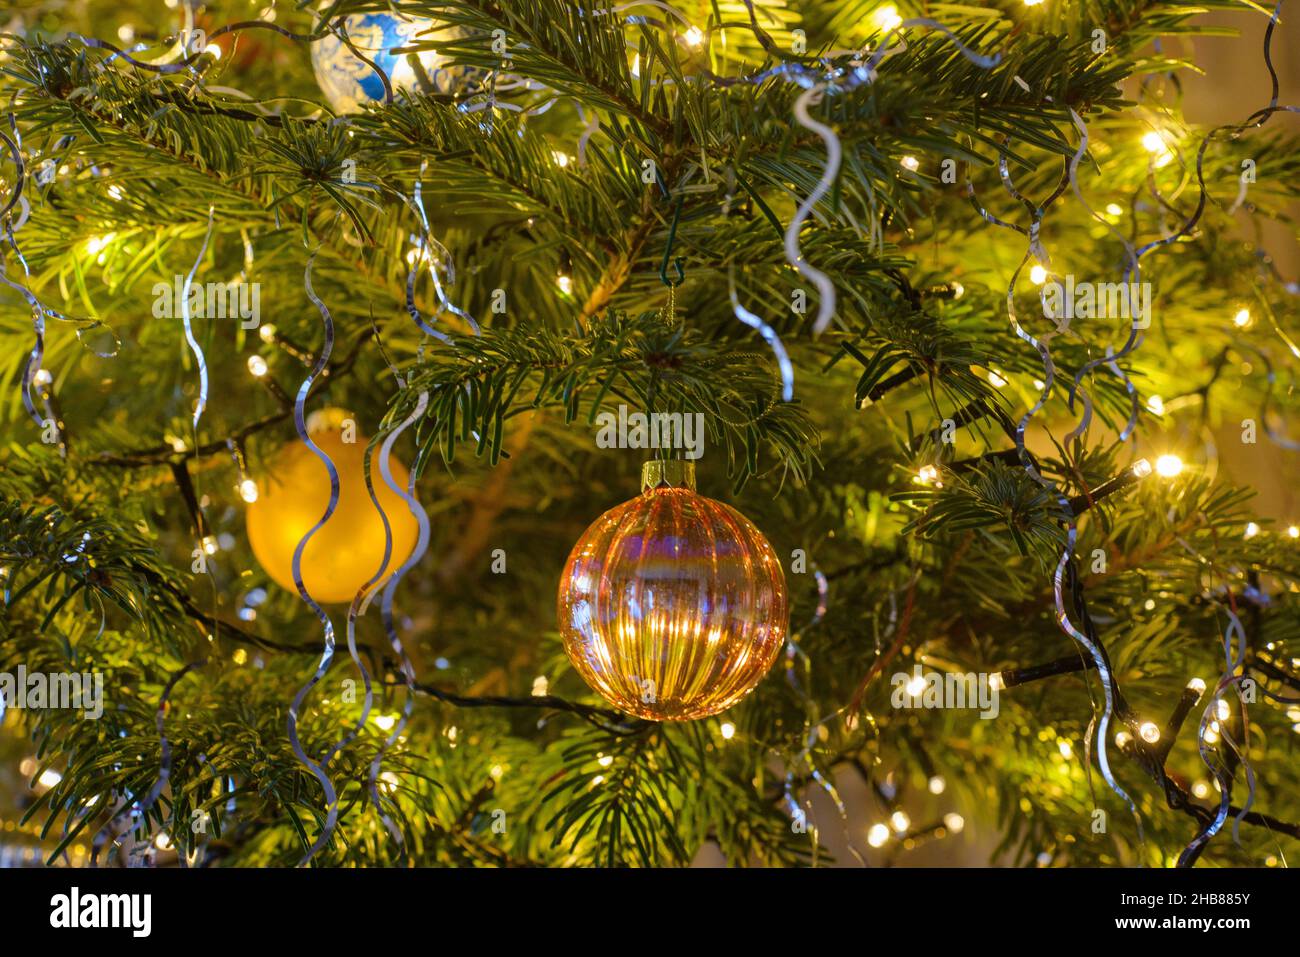 décorations et boules de noël sur un sapin pendant les fêtes de fin d'année. Christmas decorations and baubles on a tree during the festive season. Stock Photo